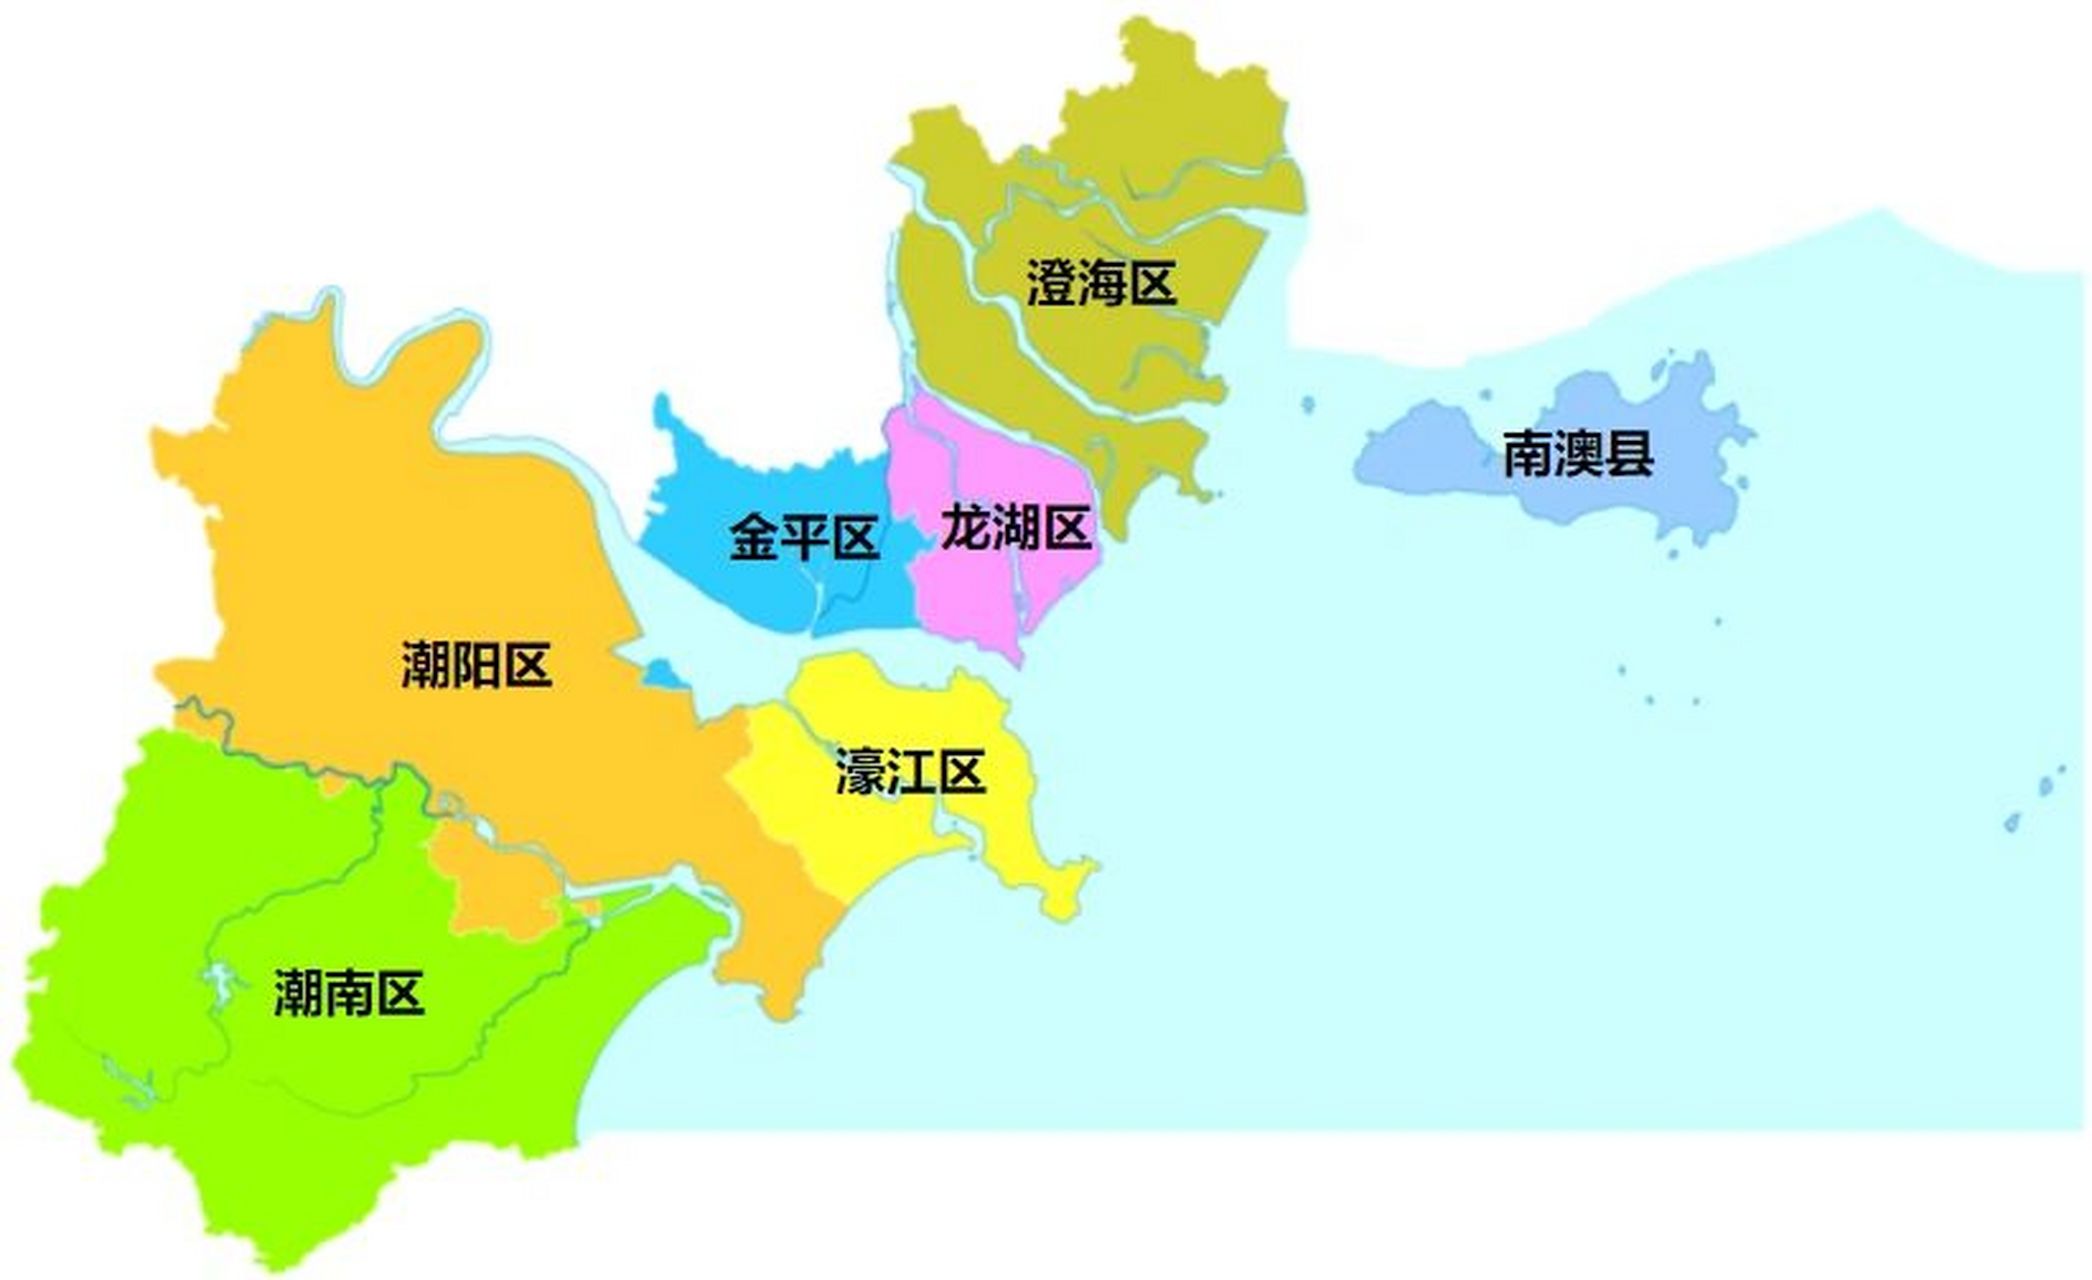 潮汕地区行政区划 潮州市,广东省辖地级市,总面积为3146平方公里,常住